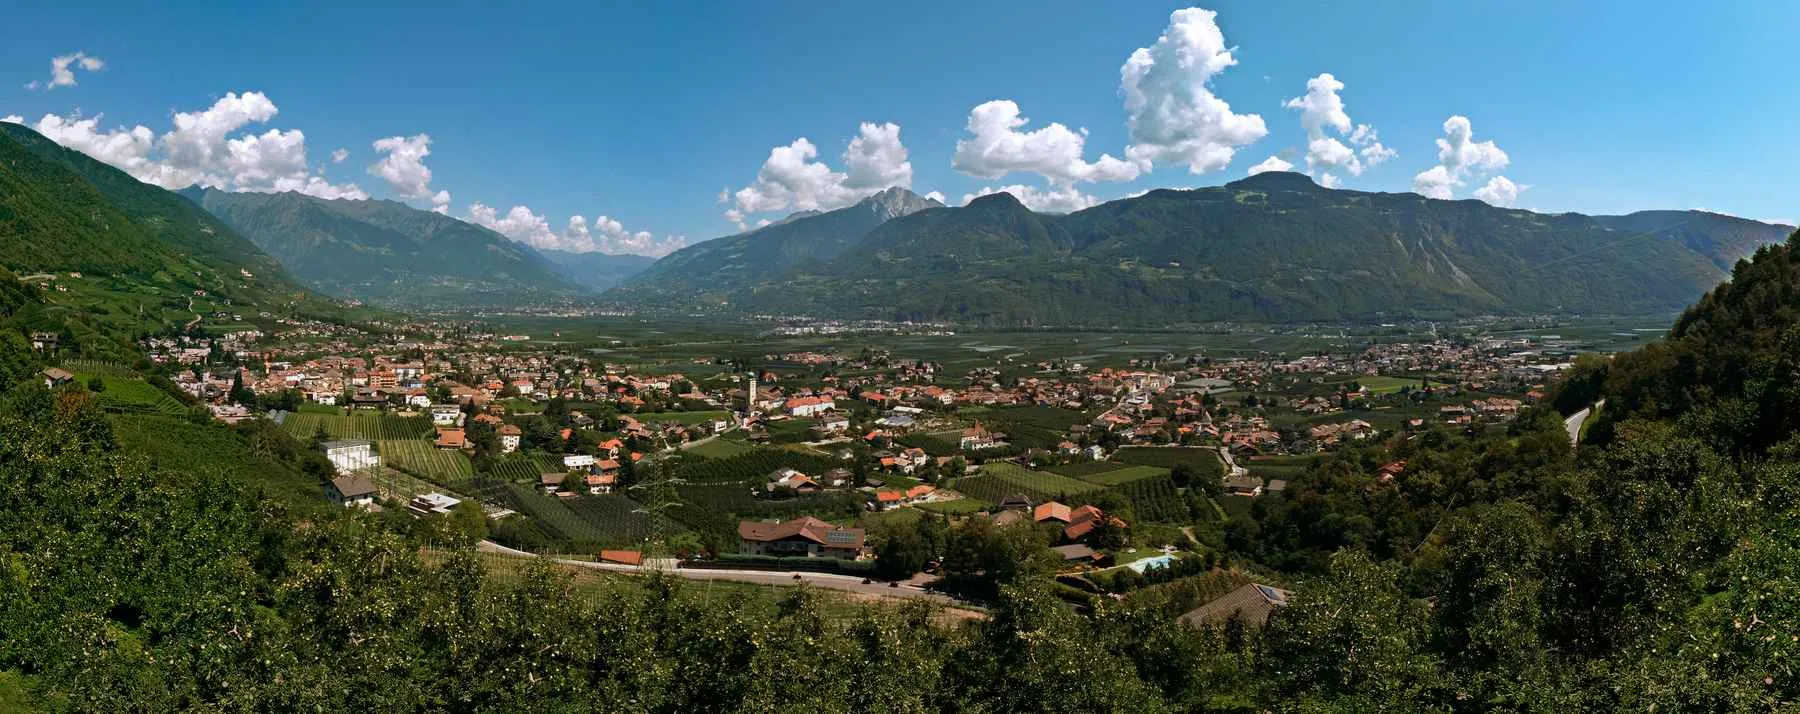 Kuva kohteesta Provincia Autonoma di Bolzano/Bozen